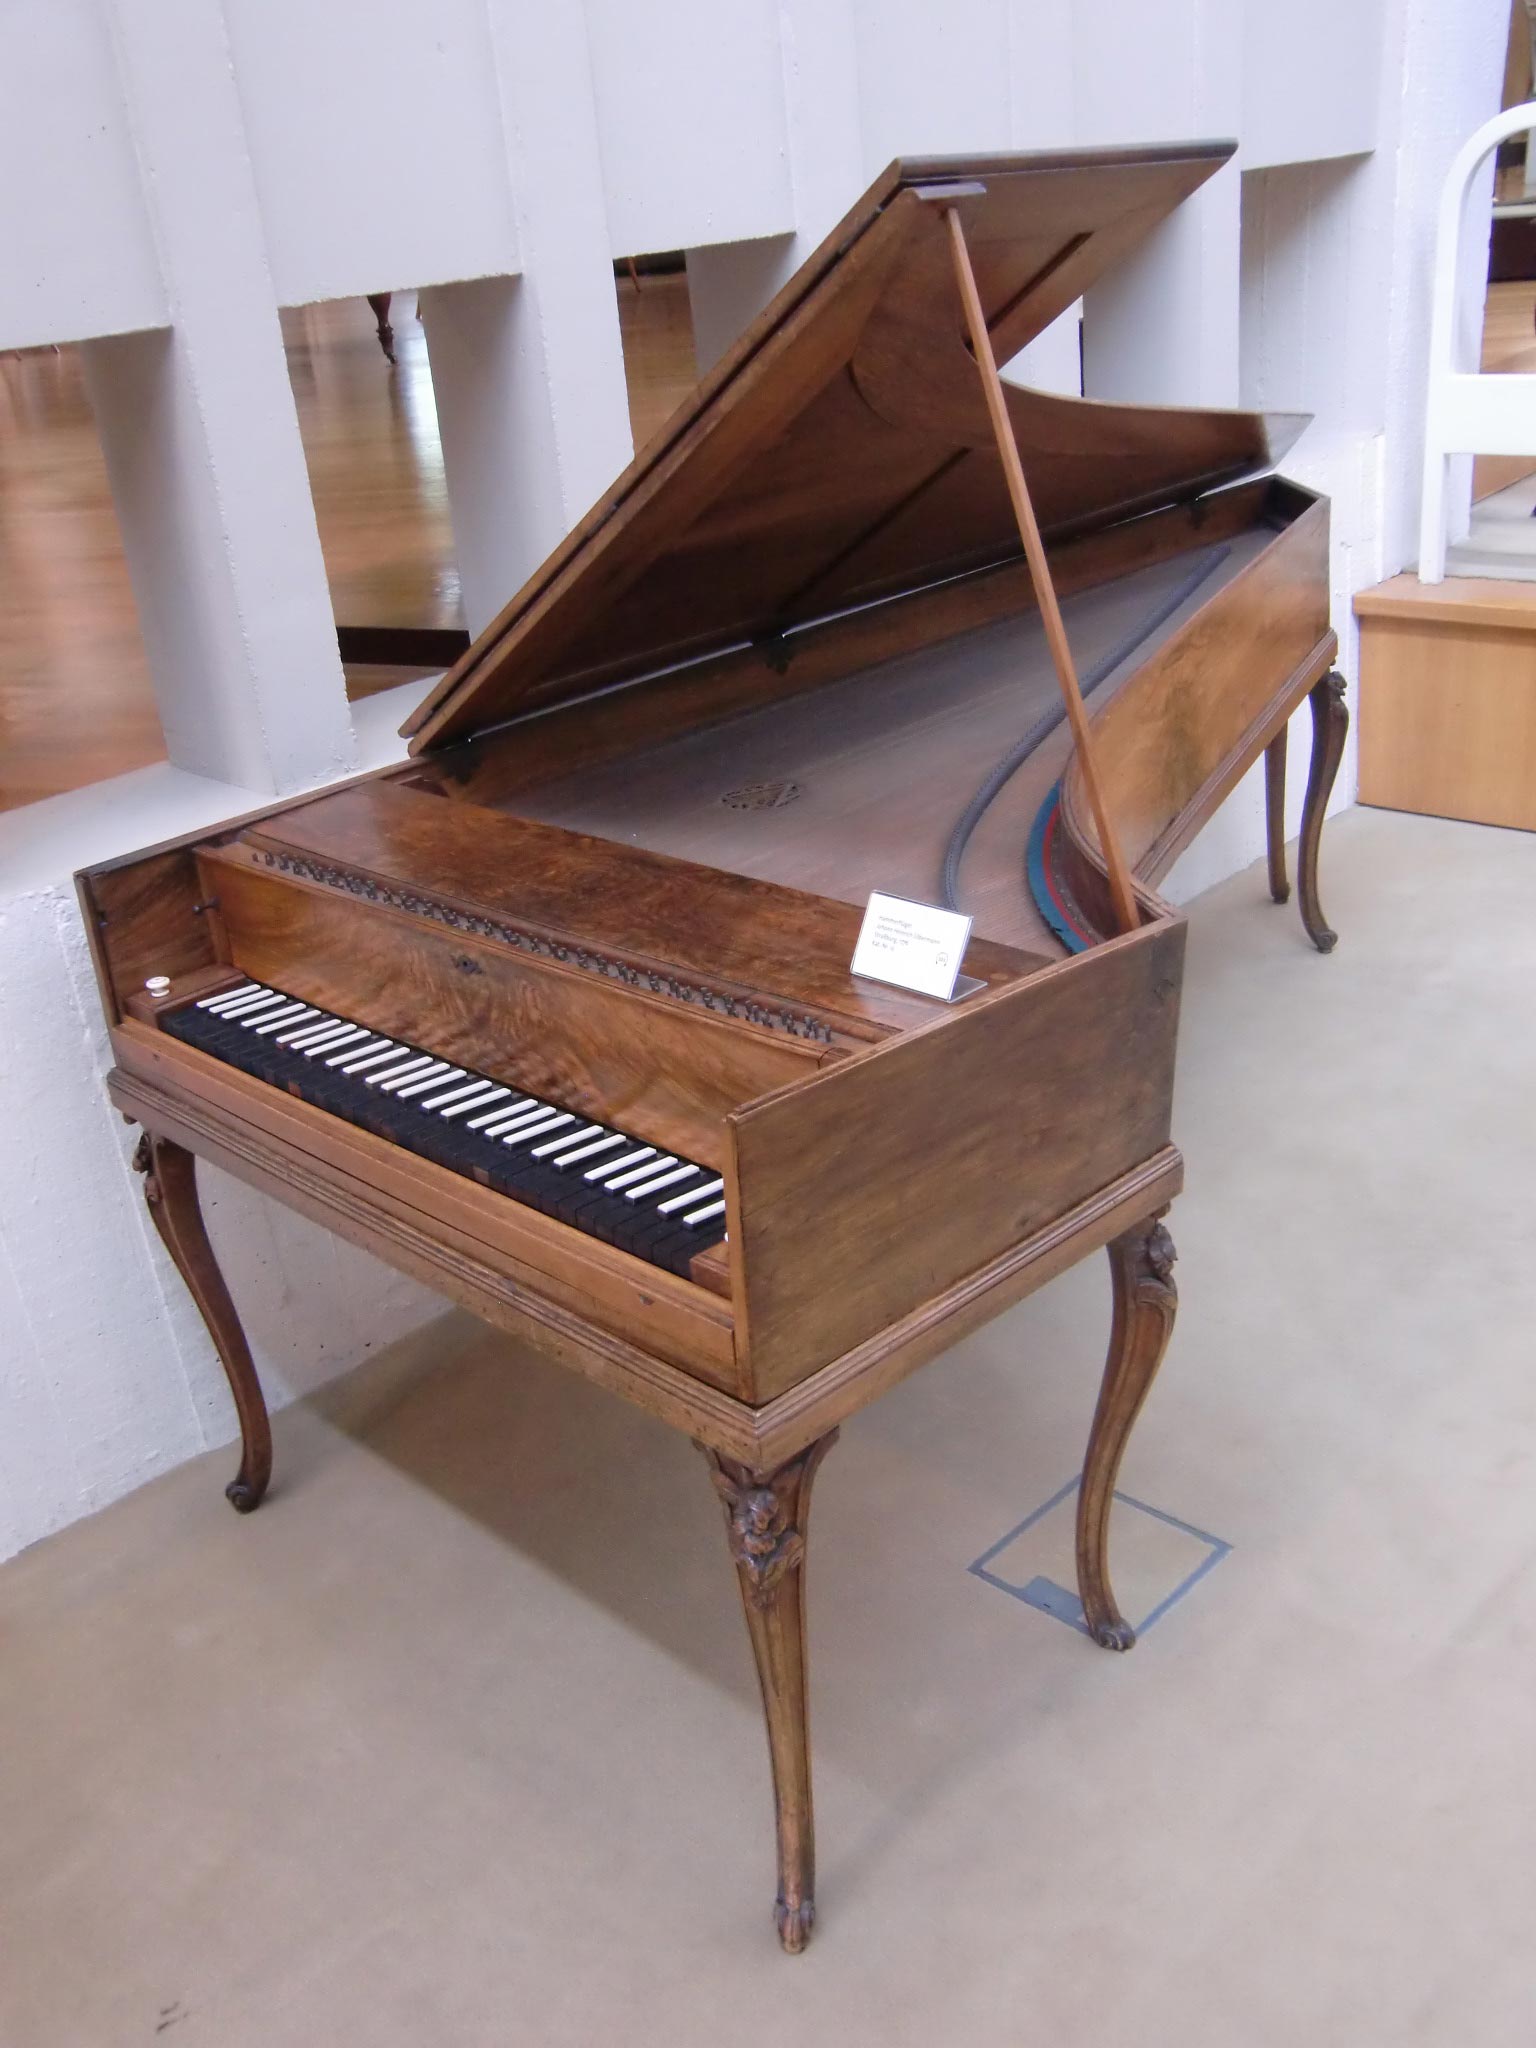 Fortepiano, Johann Heinrich Silbermann, 1776, Musikinstrumenten-Museum Berlin, ©Gérard Janot